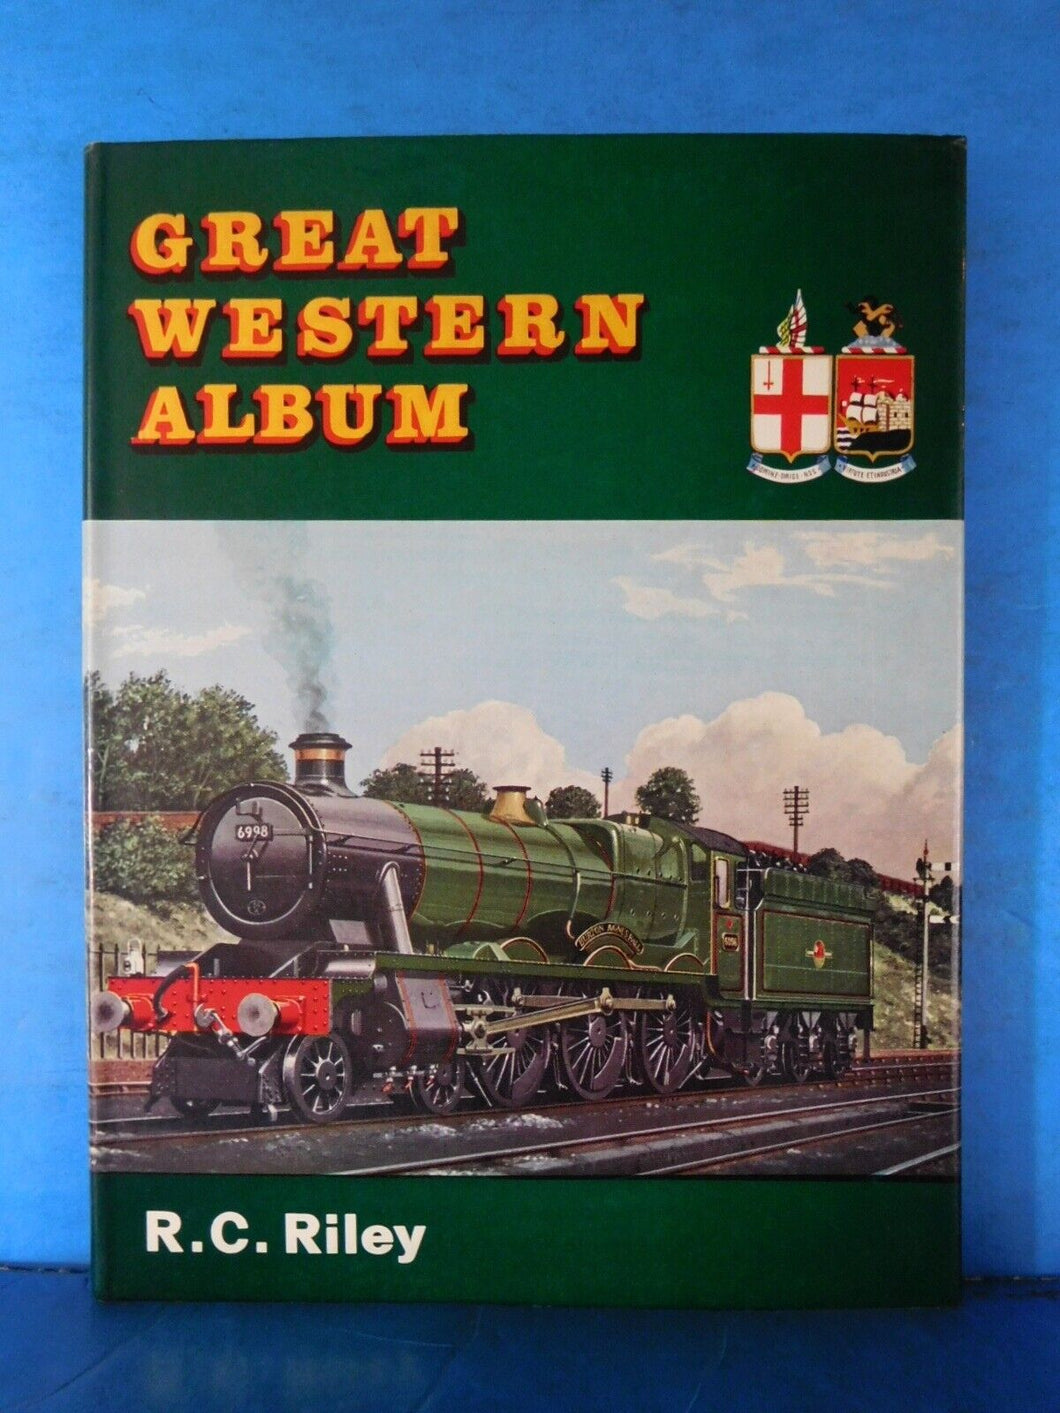 Great Western Album by R.C. Riley